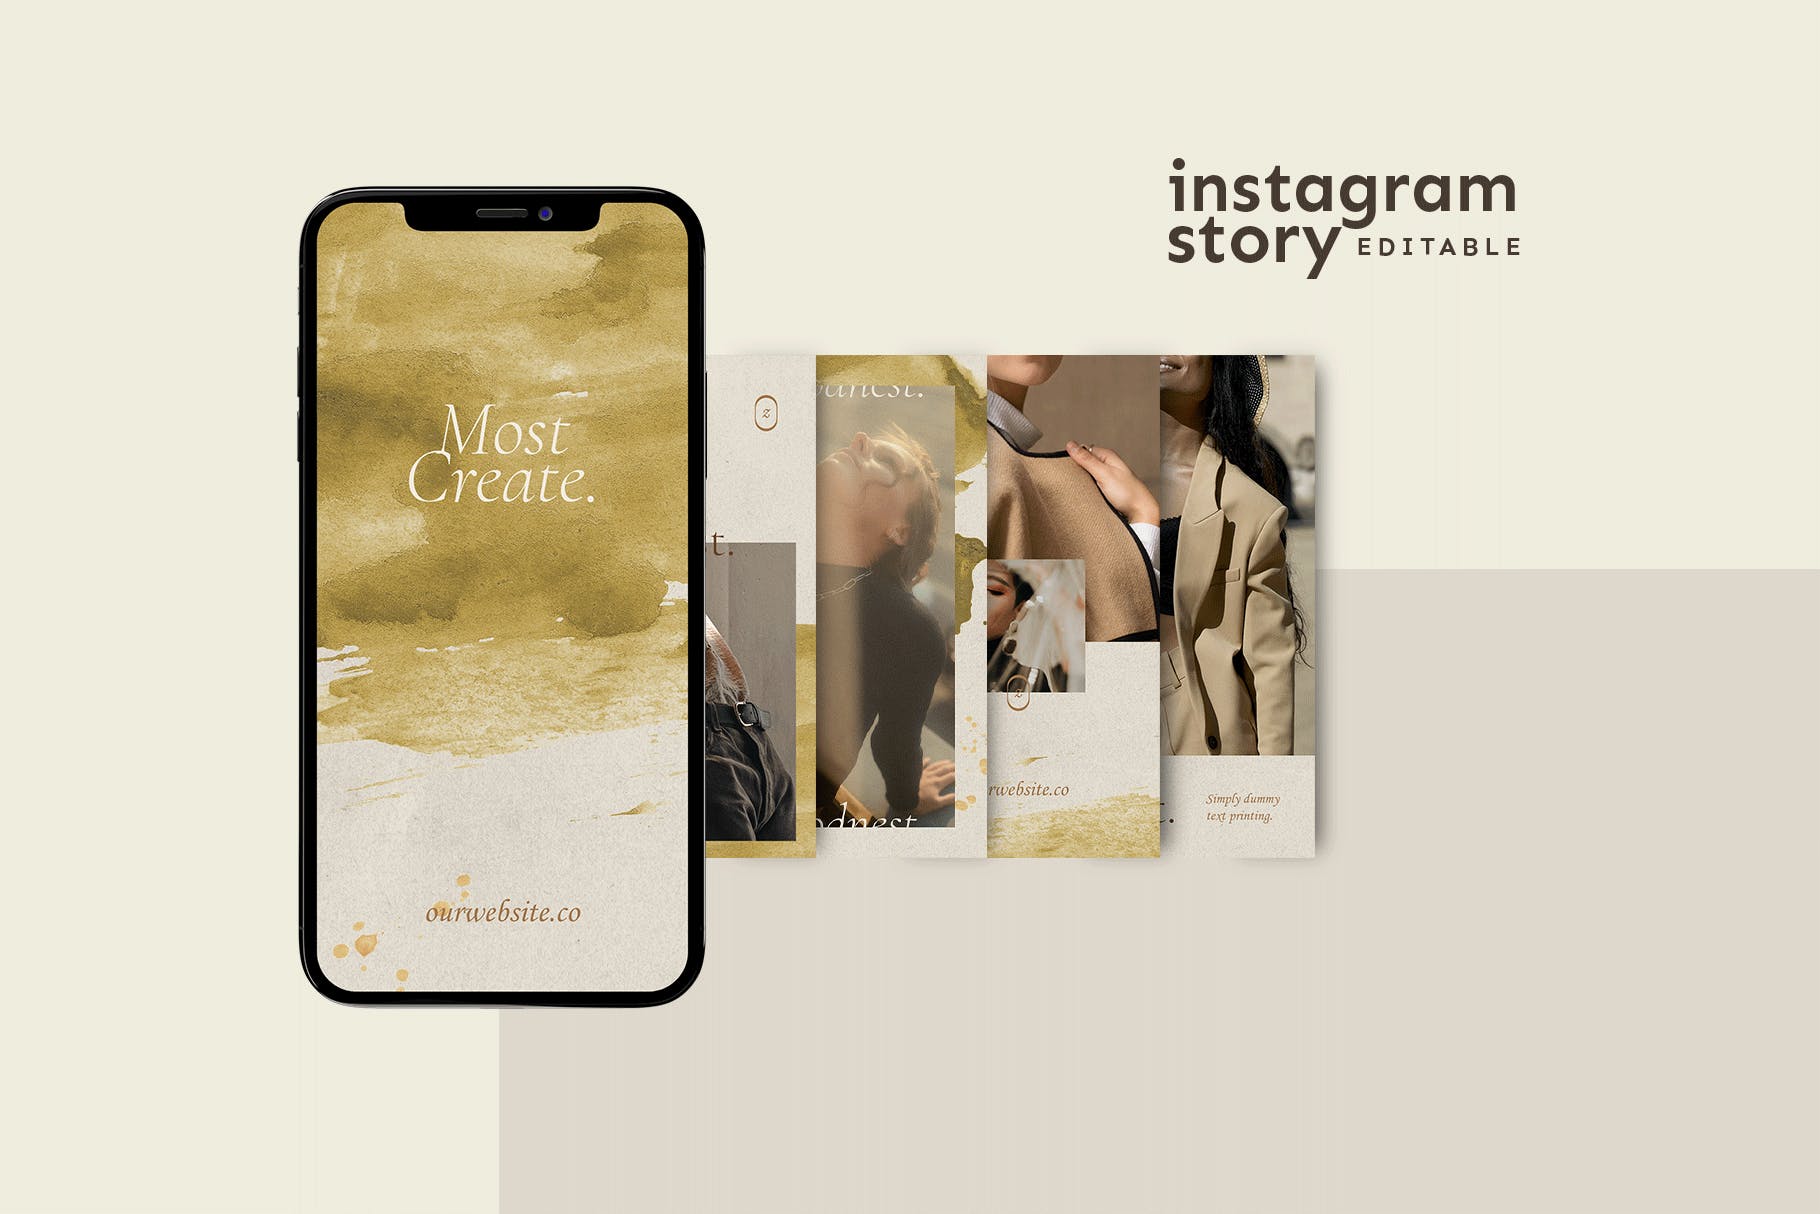 服装品牌故事金色纹理Instagram贴图模板素材 Instagram Story Template设计素材模板